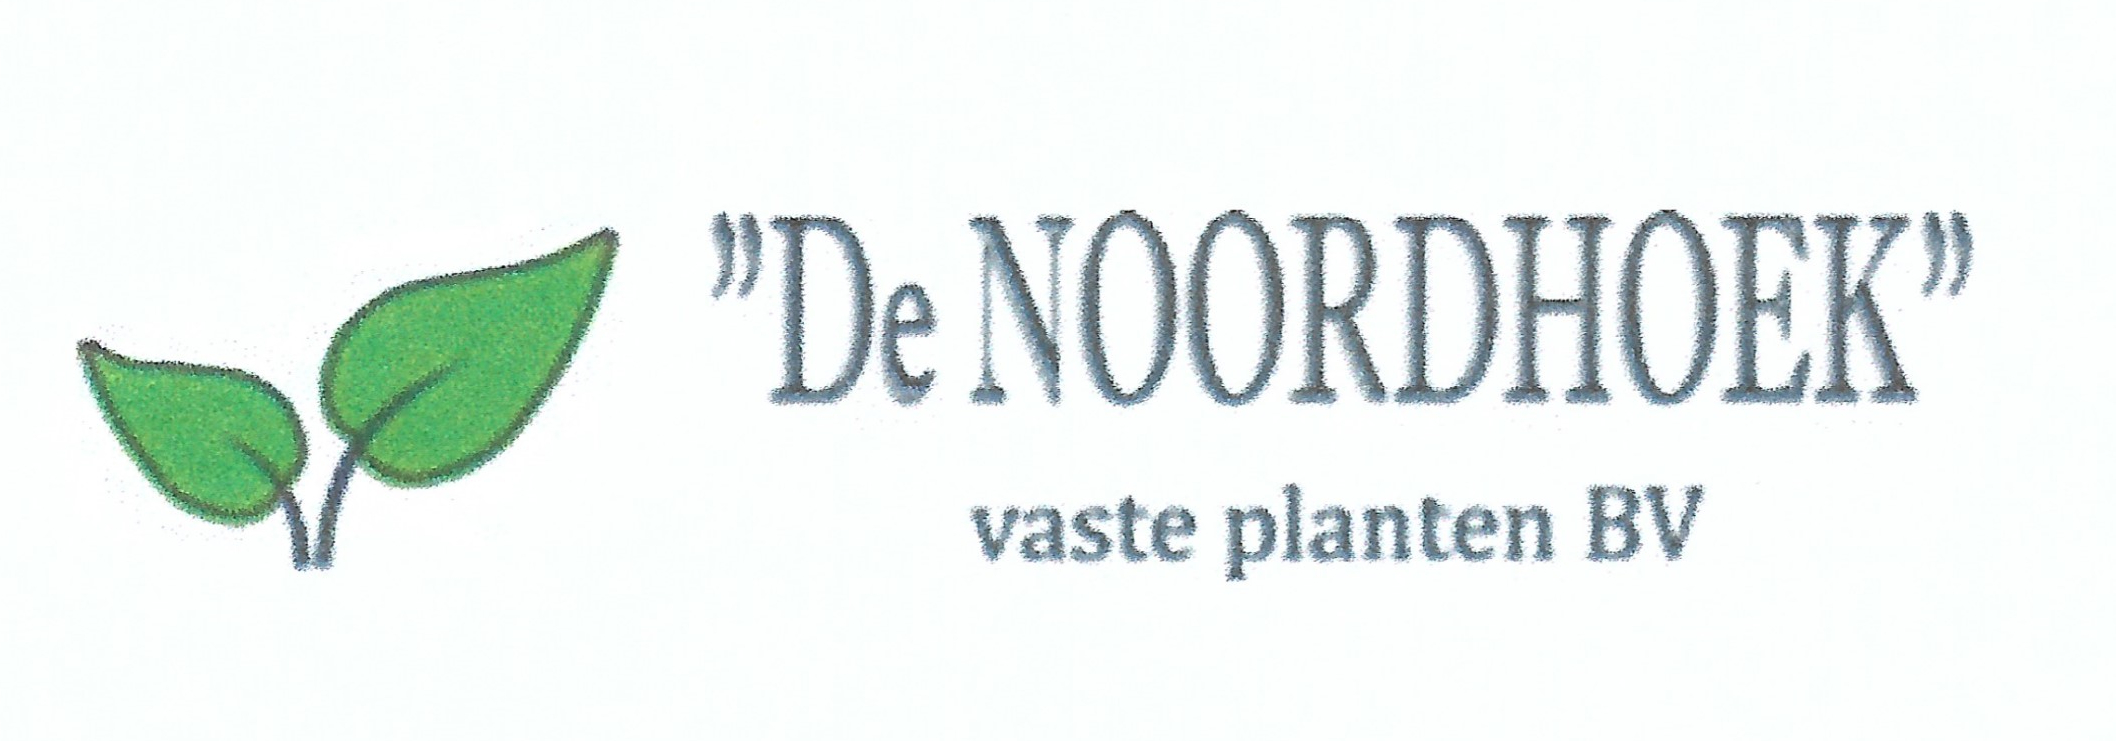 De Noordhoek vaste planten BV